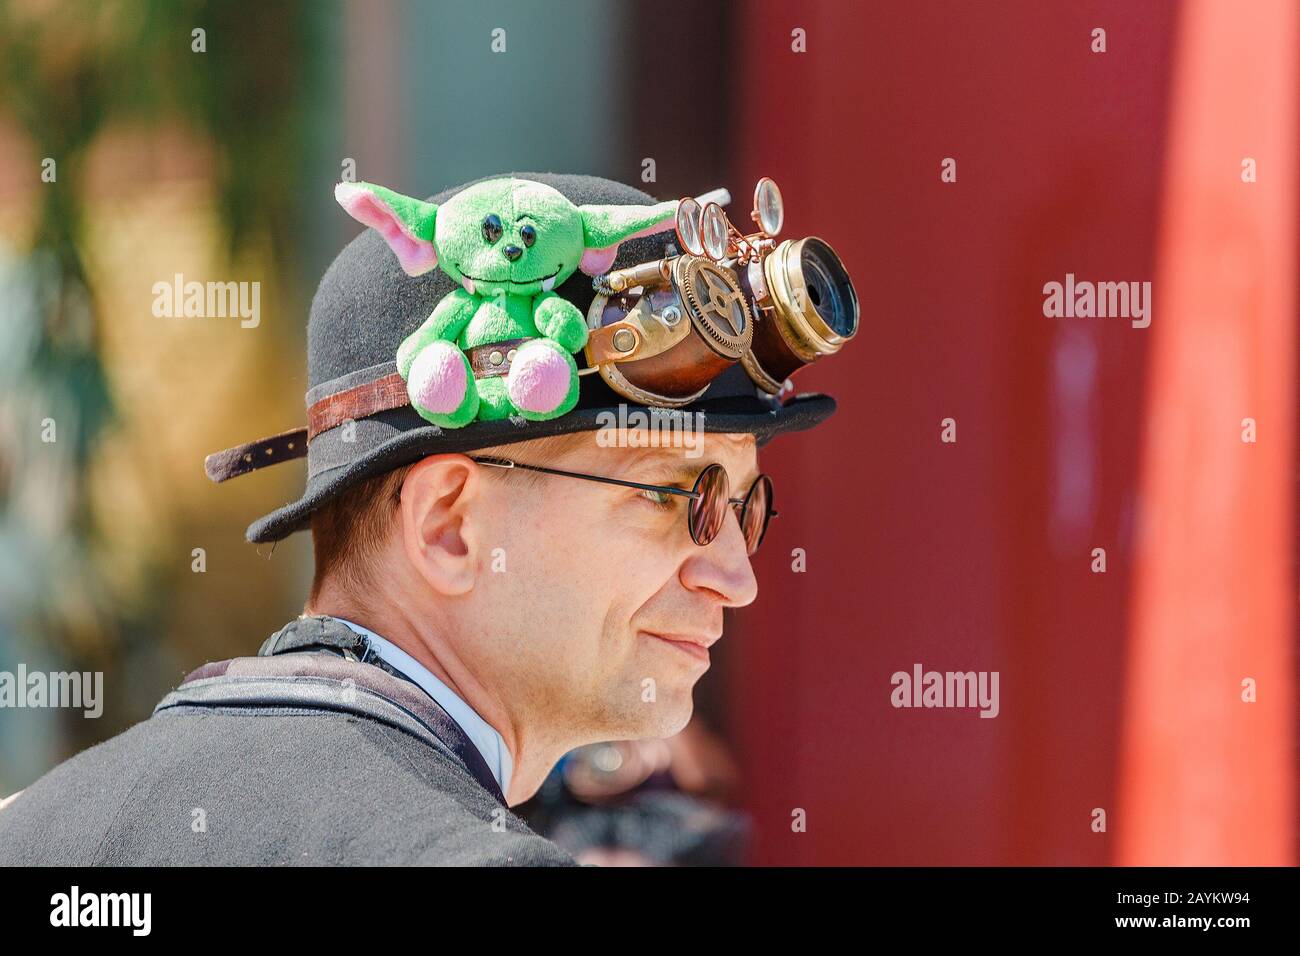 Leipzig, 21. MAI 2018: Verkleidete Menschen nehmen am jährlichen Gotik- und Steampunk-Festival in Leipzig Teil Stockfoto